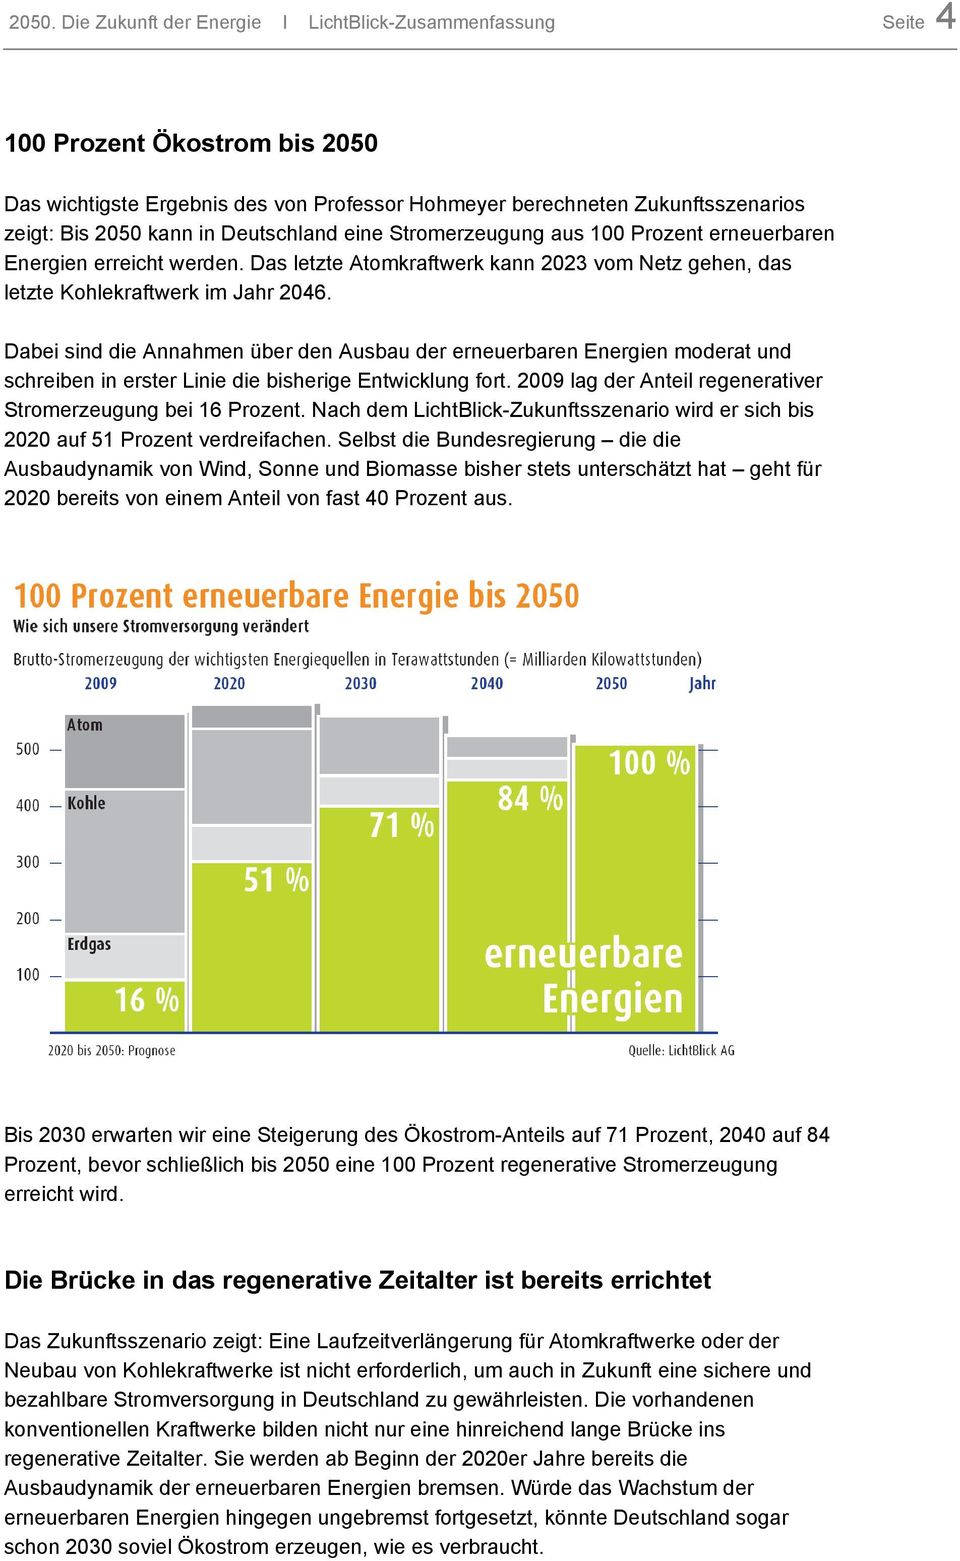 Dabei sind die Annahmen über den Ausbau der erneuerbaren Energien moderat und schreiben in erster Linie die bisherige Entwicklung fort. 2009 lag der Anteil regenerativer Stromerzeugung bei 16 Prozent.